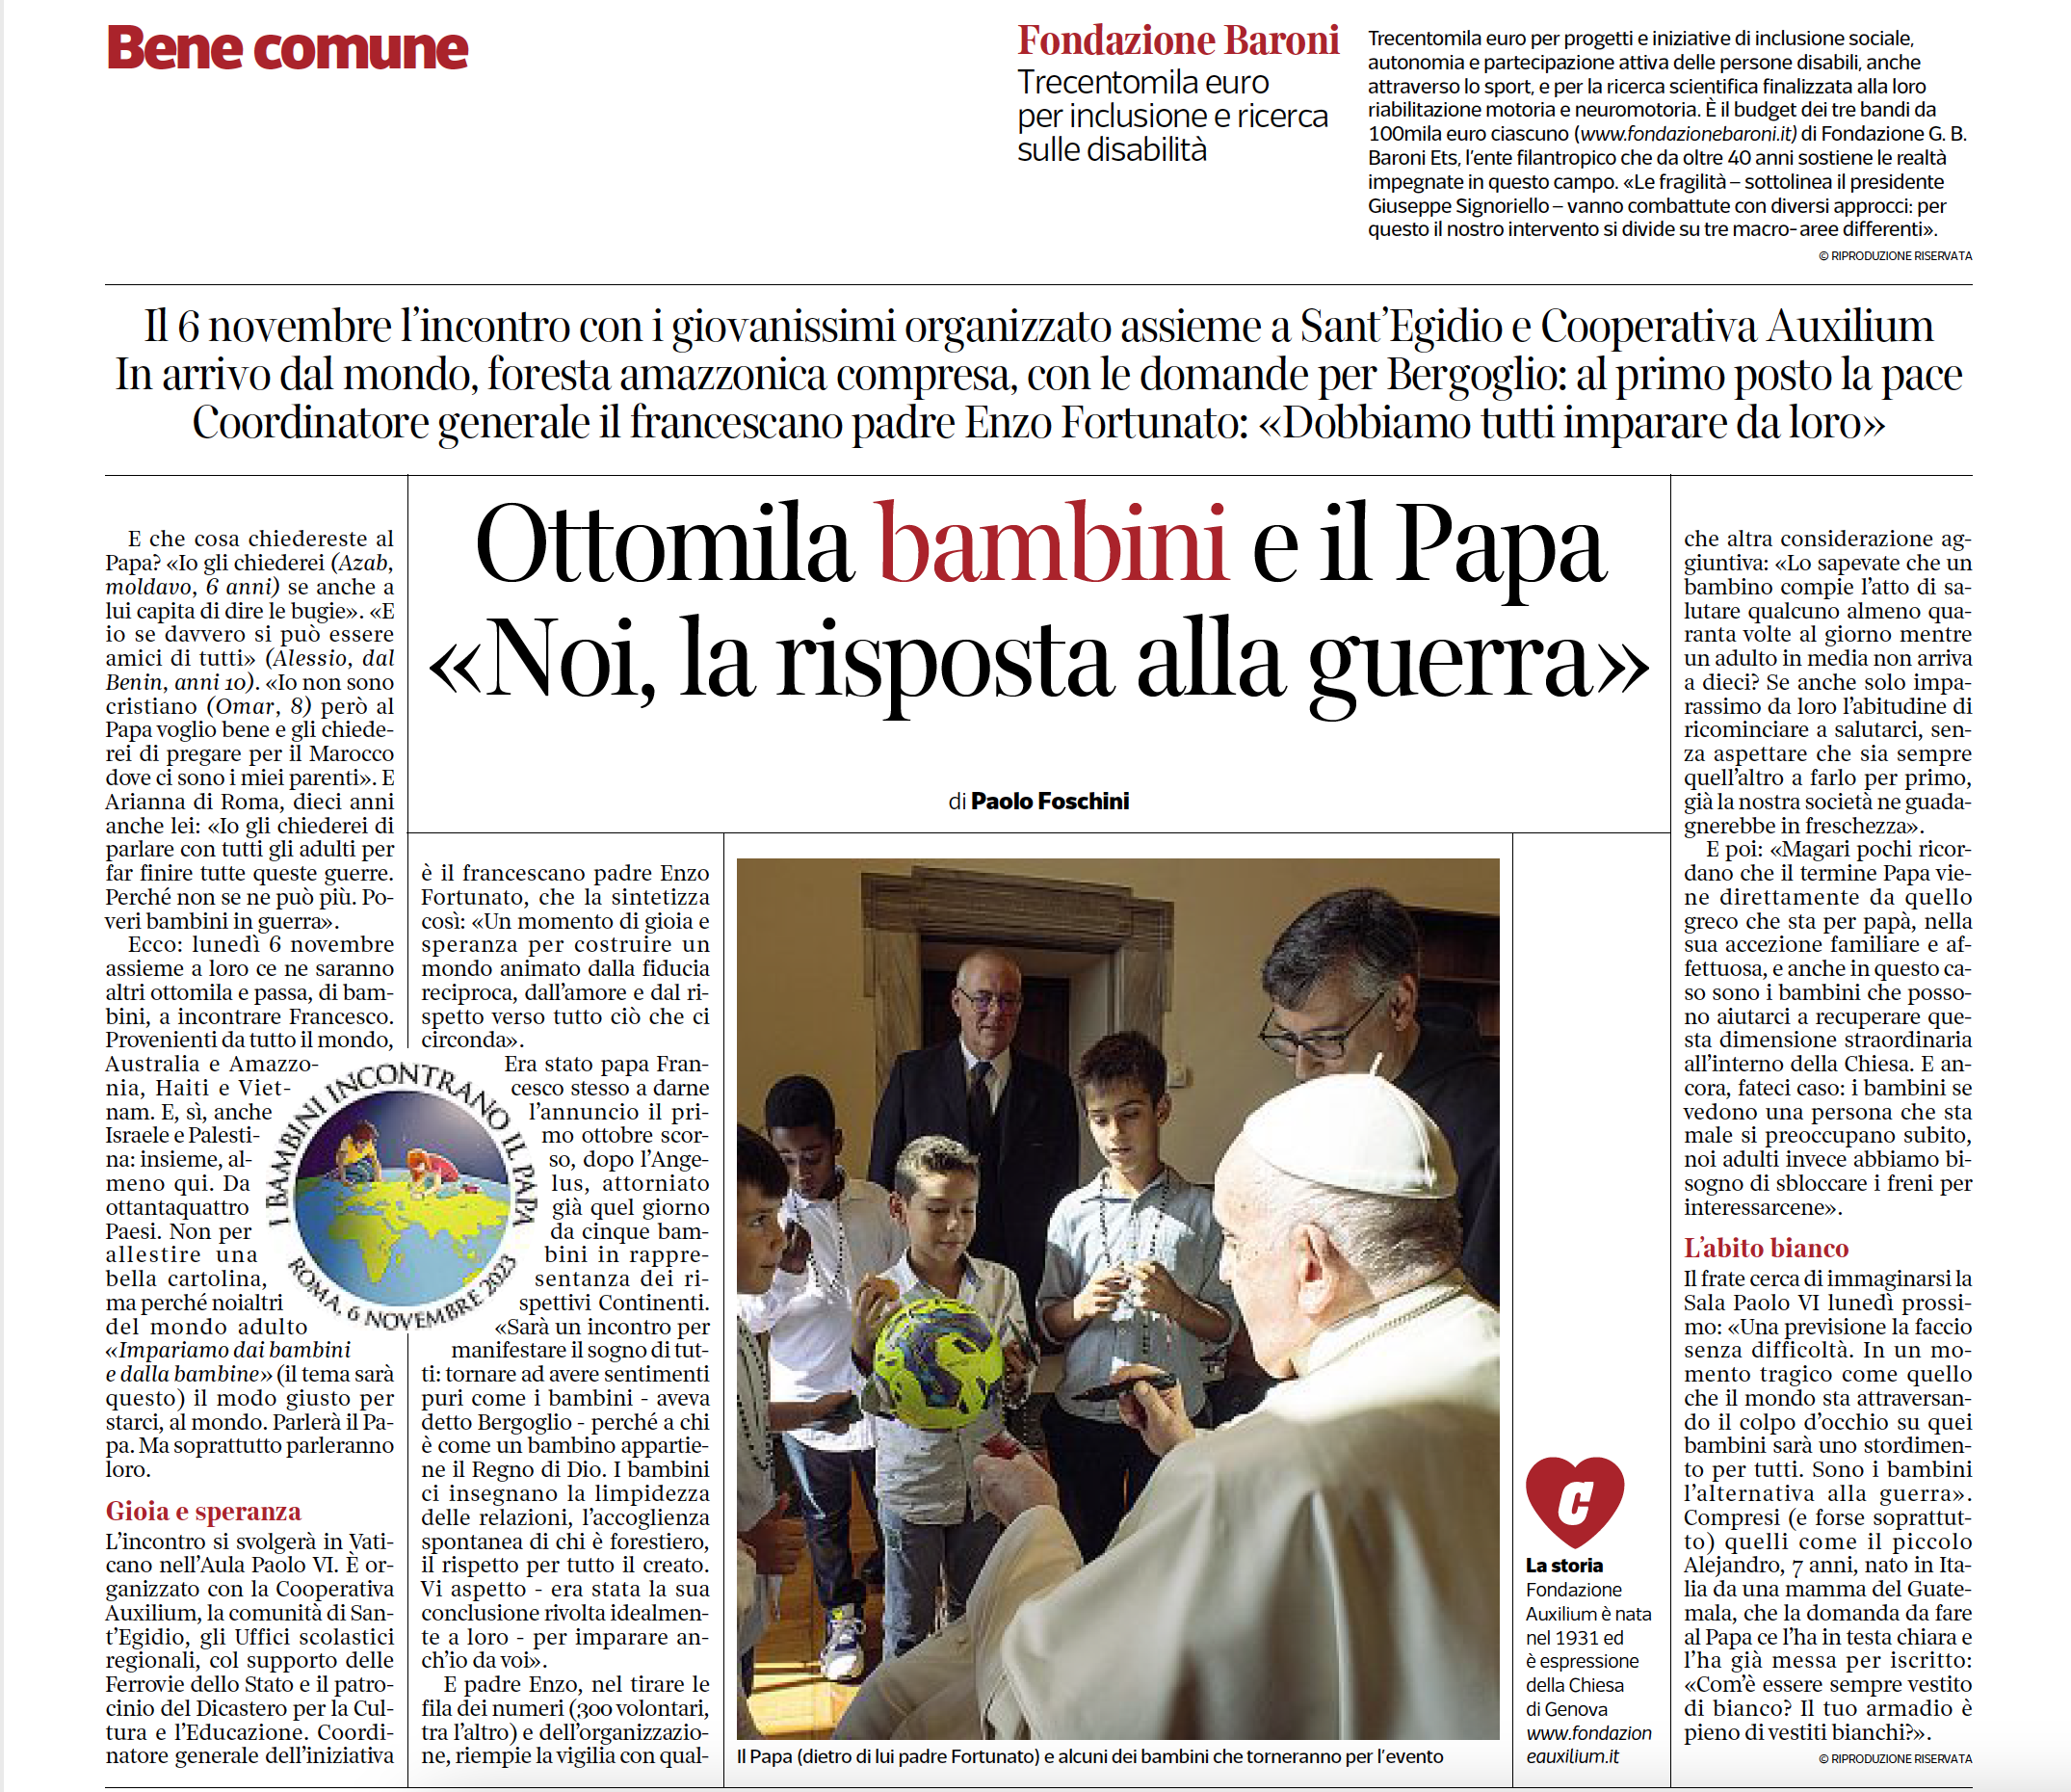 Il Corriere della Sera sull'evento "I bambini incontrano il Papa" promosso da Auxilium